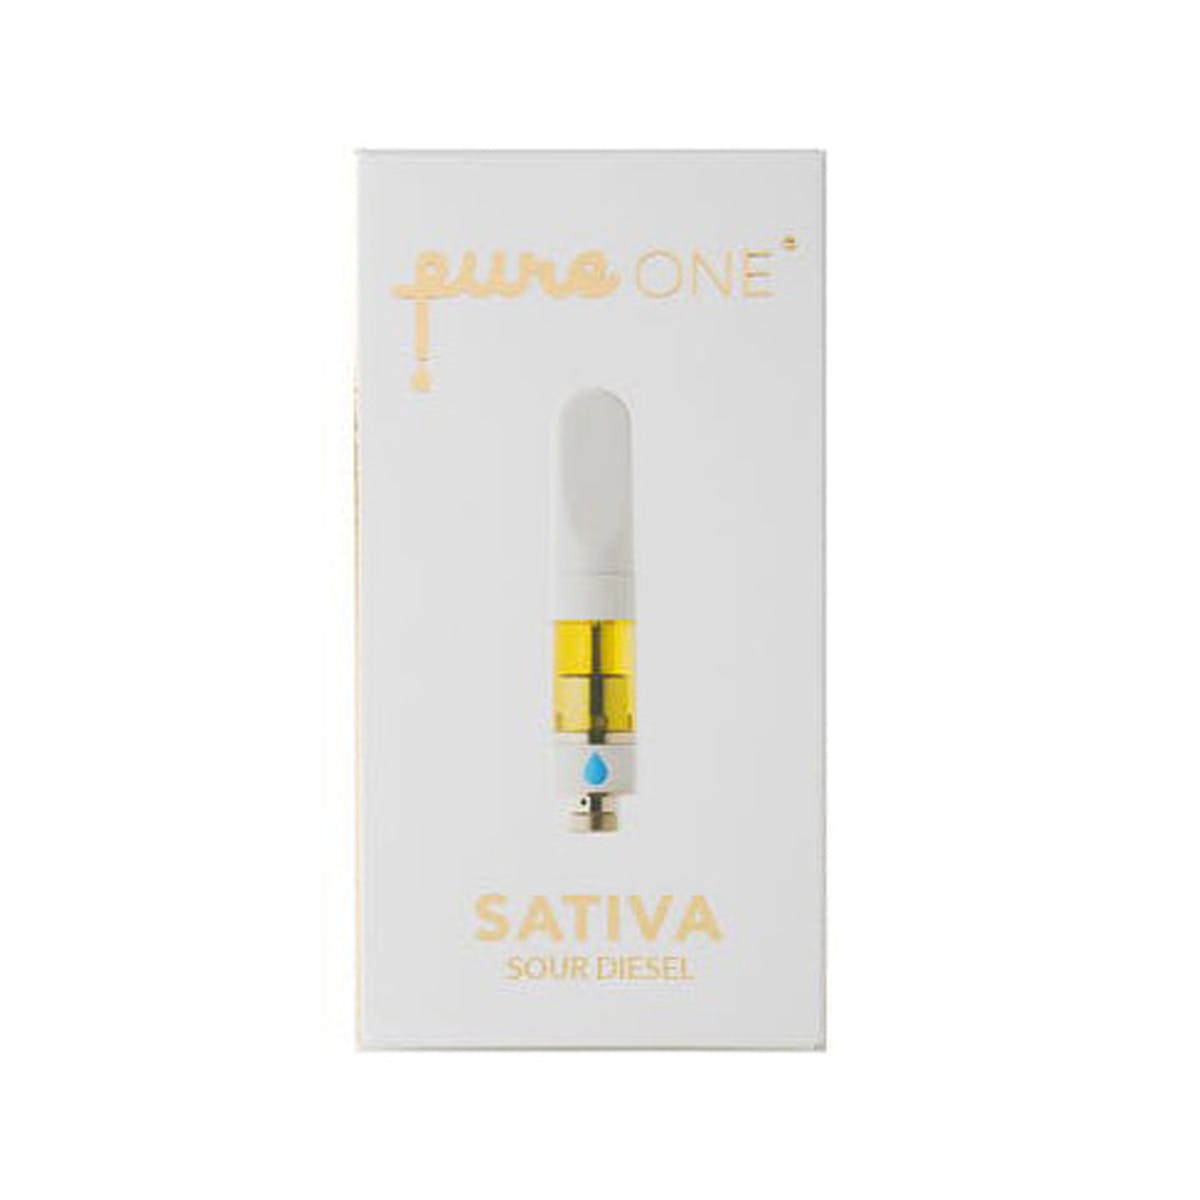 marijuana-dispensaries-sonoma-patient-group-in-santa-rosa-2c-ca-sativa-pureone-co2-cartridge-sour-diesel